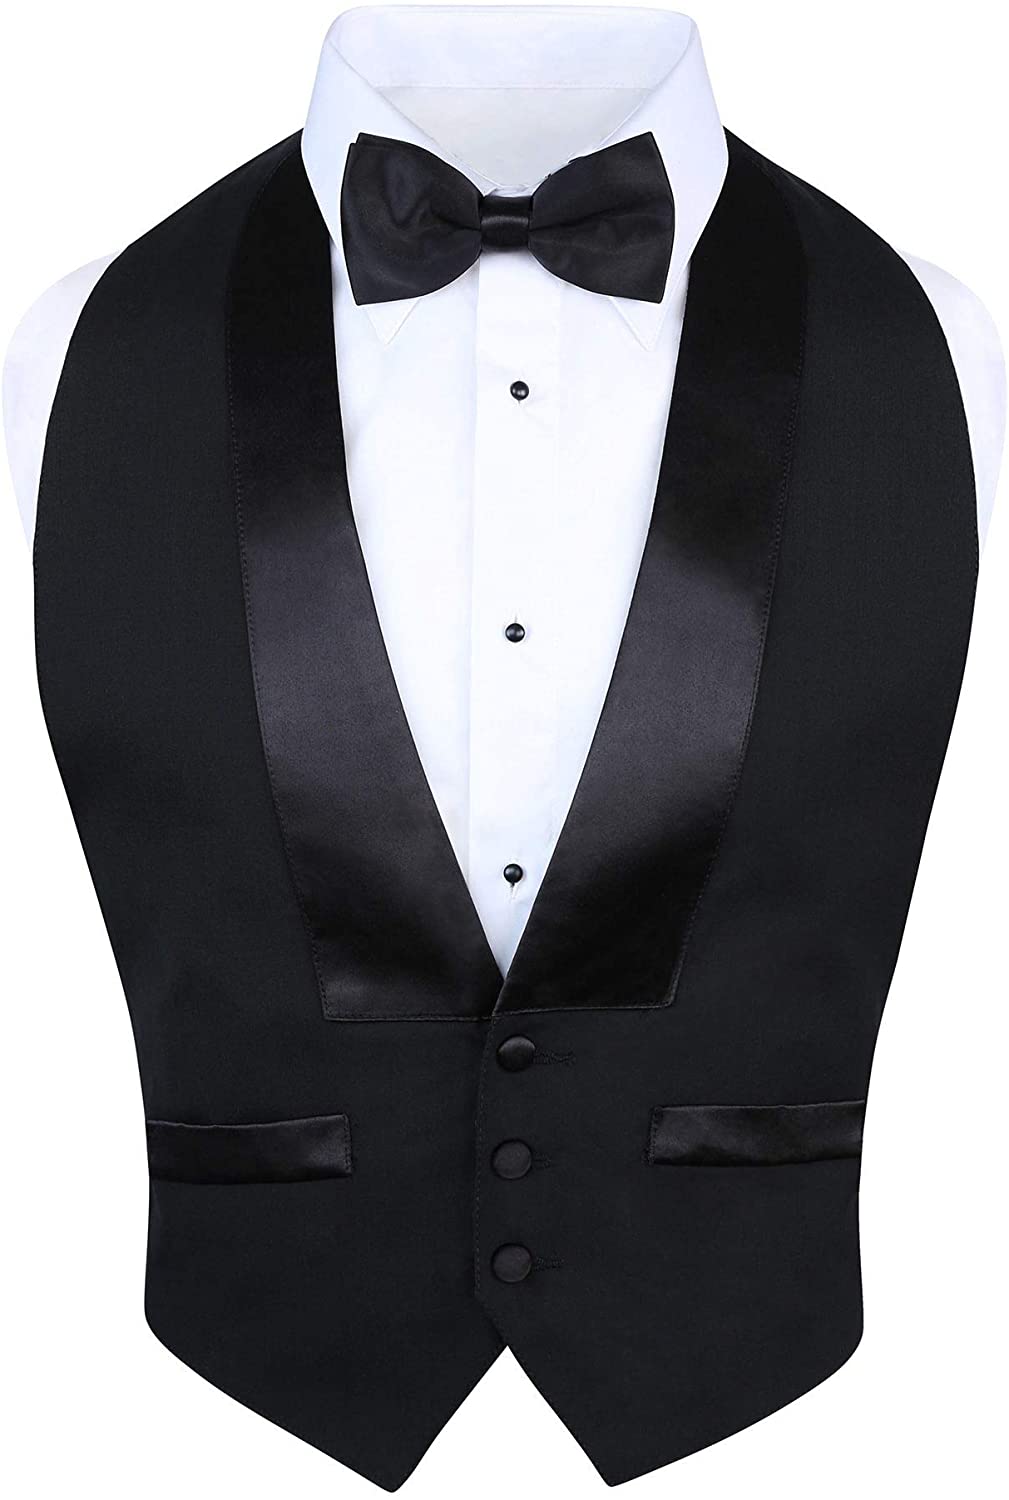 New Black Satin Tuxedo Vest Tux Bow Tie Low cut 3 button open back Adj S M L XL 